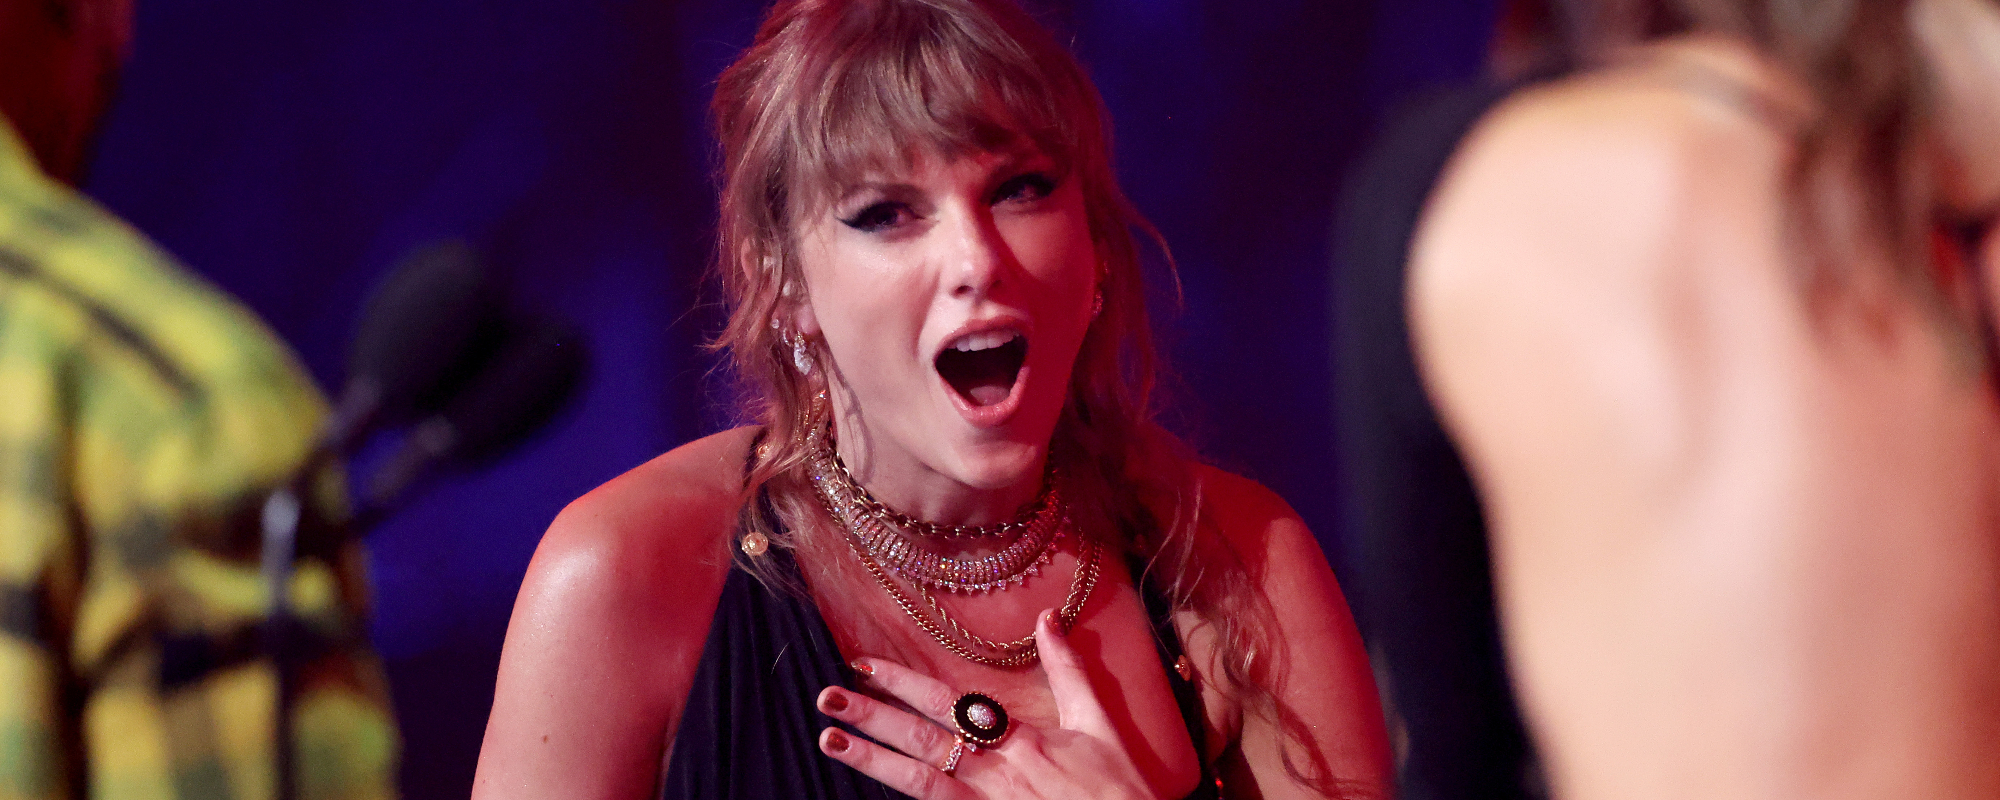 Mariska Hargitay Names New Cat After Taylor Swift Song,  the “Karma” Hitmaker Reacts